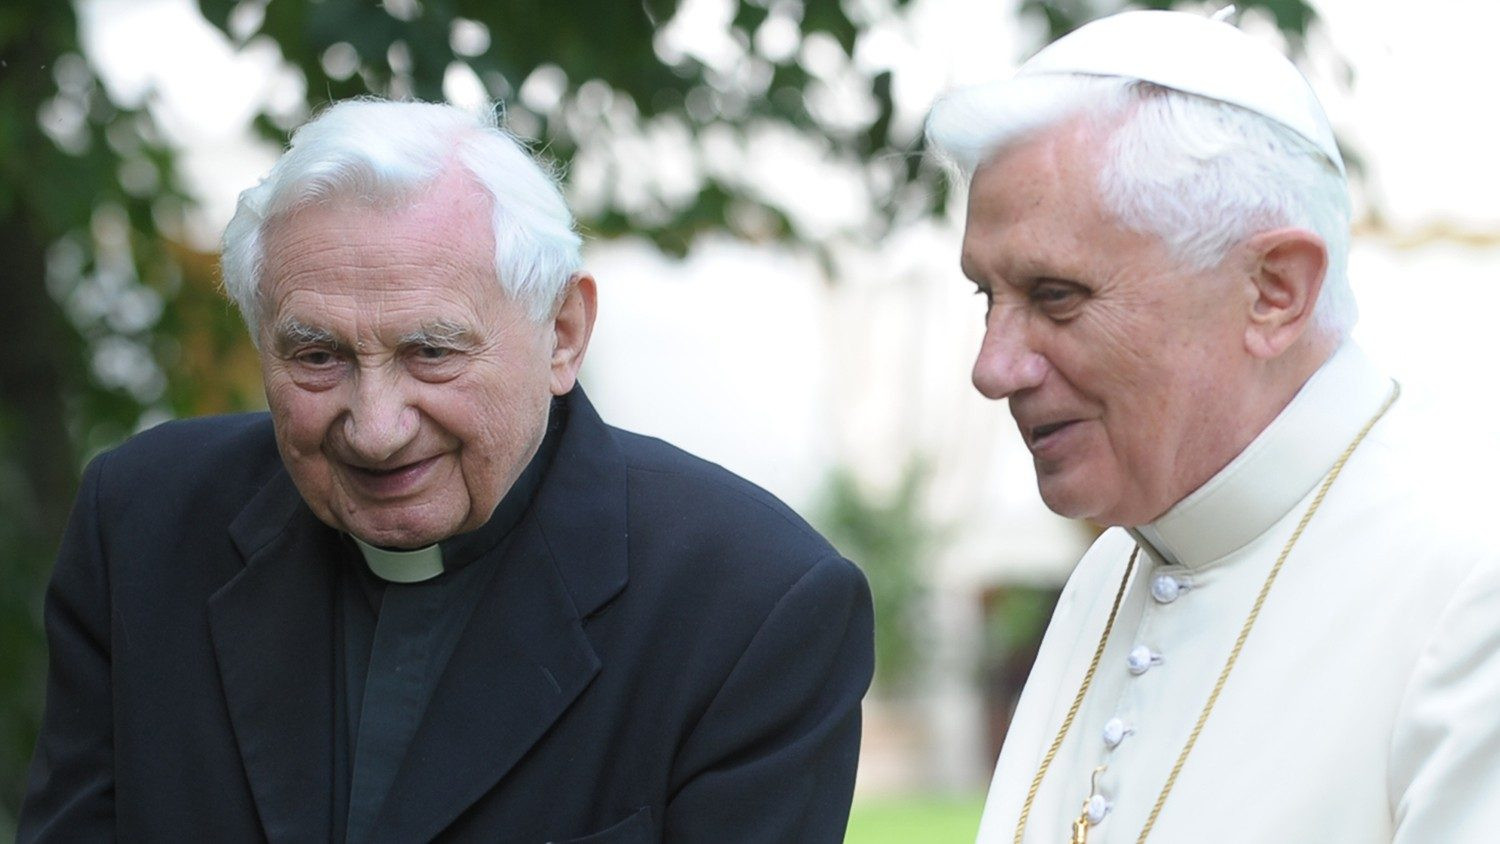 Zaslužni papež Benedikt na obisku pri svojem bolnem bratu Georgu, s katerim sta isti dan prejela mašniško posvečenje.